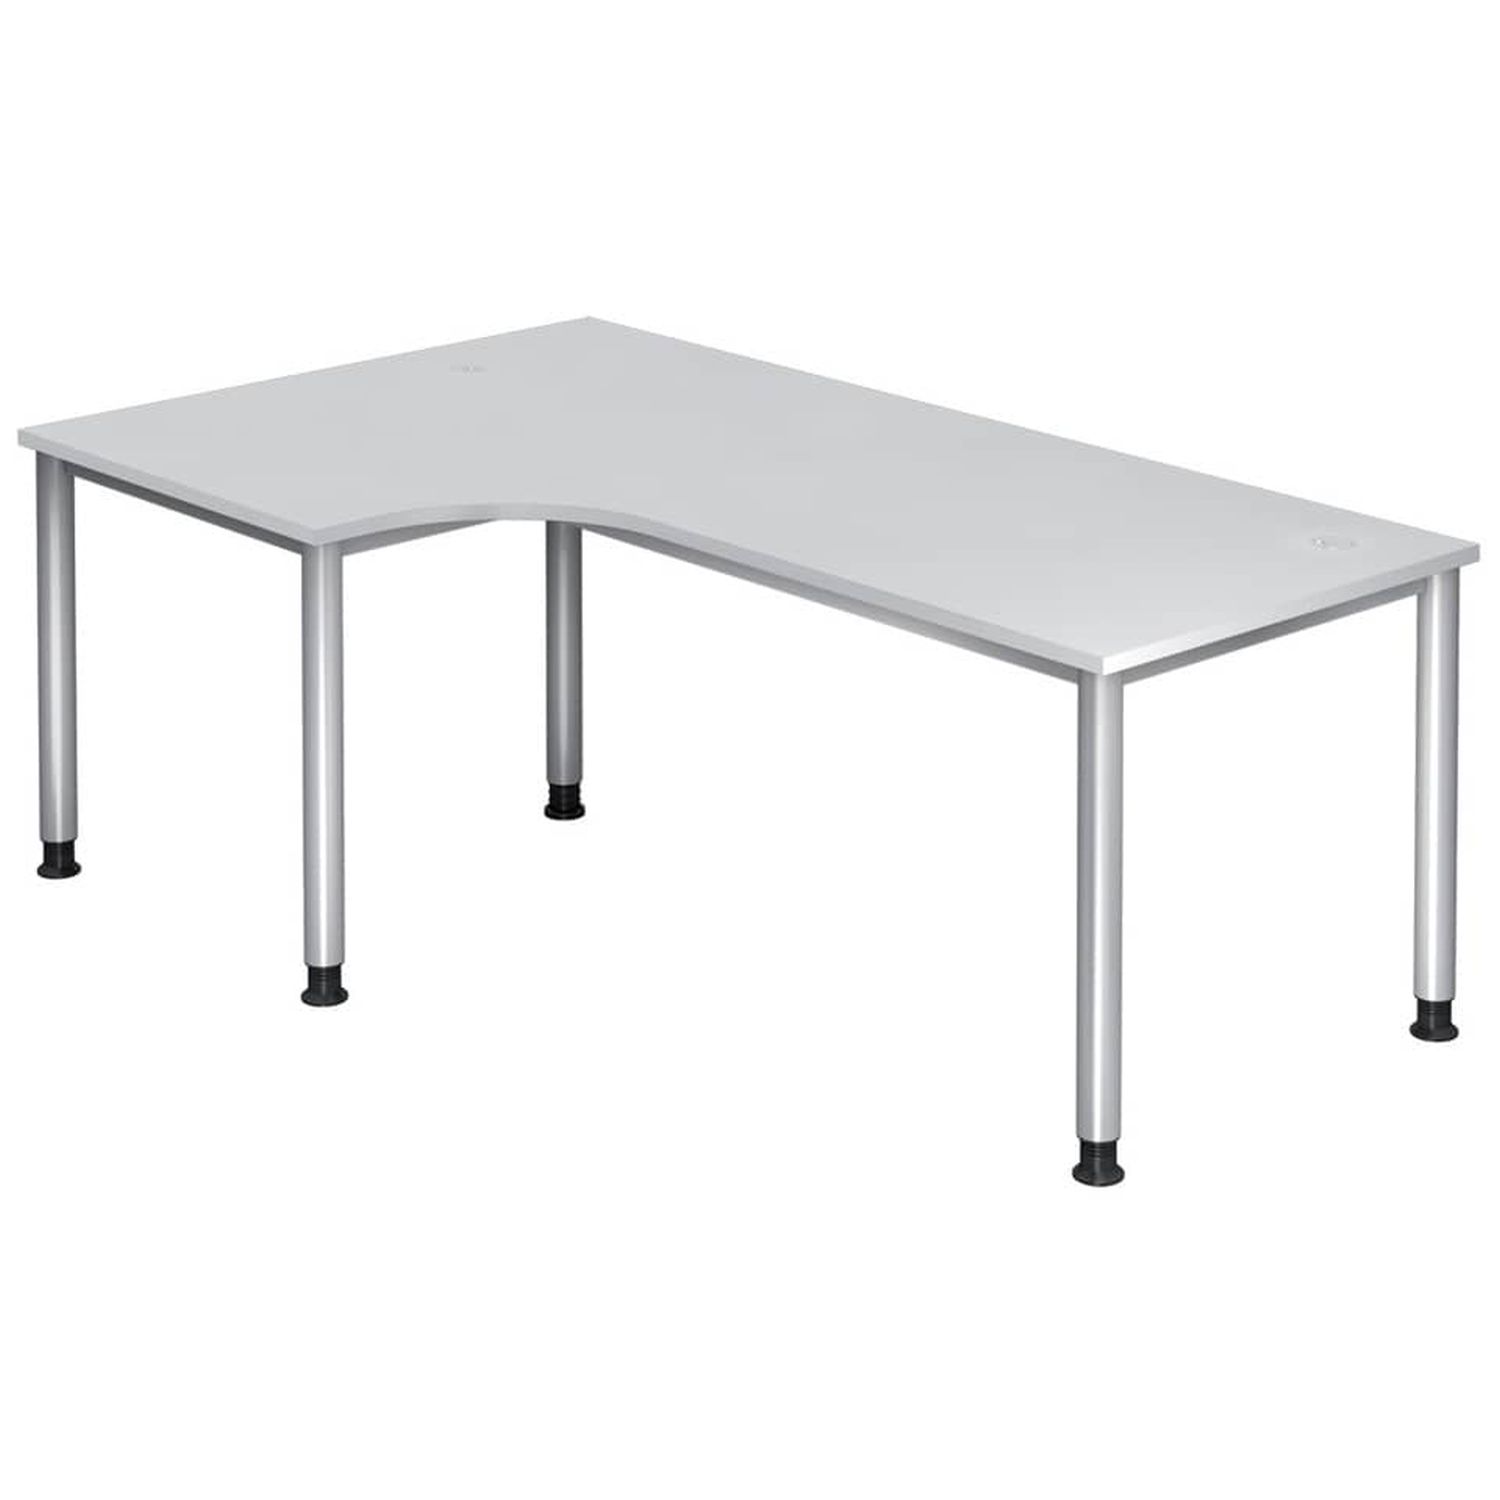 Winkeltisch 4-Fuß-Gestell rund -200 x 68-76 - 120 cm, höhenverstellbar, Winkel 90°, Weiß/Silber